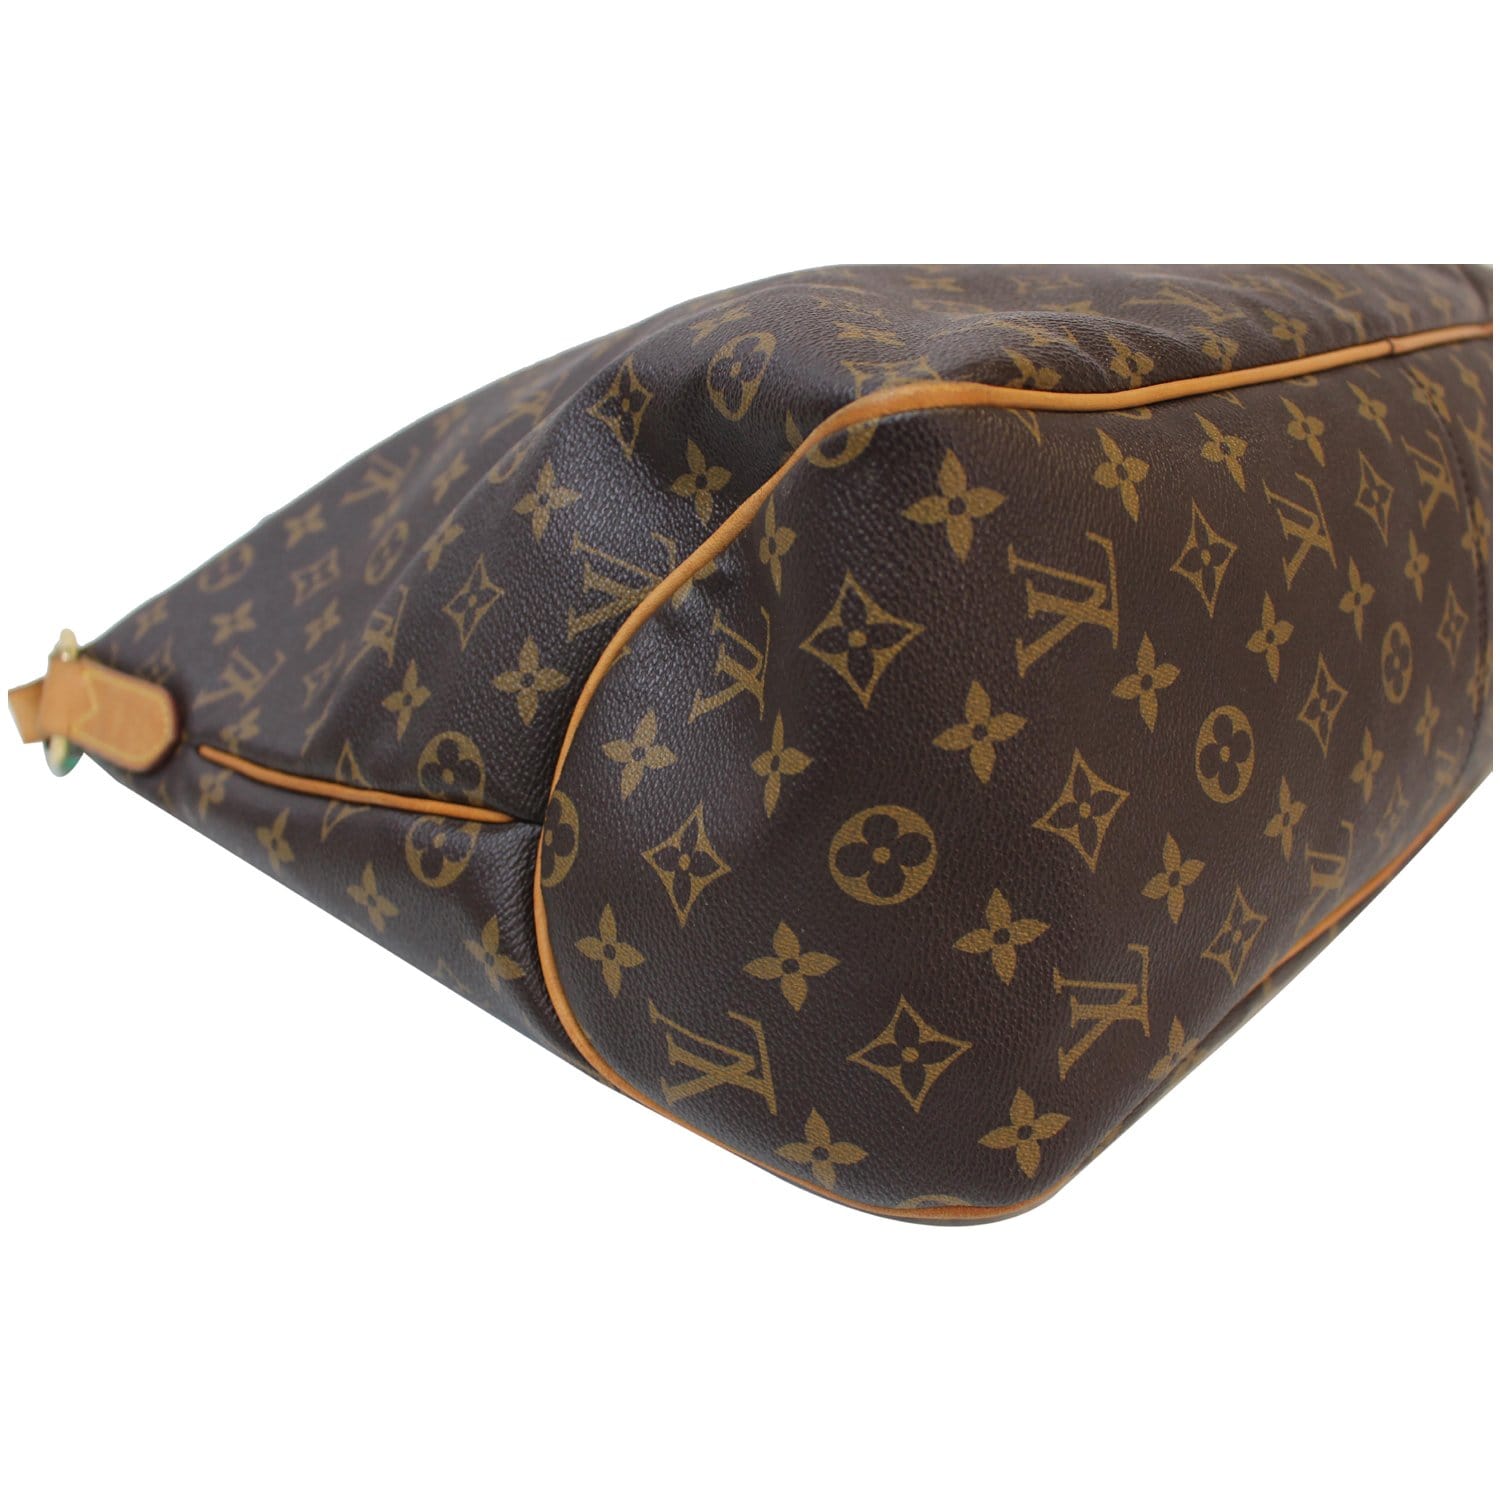 Louis Vuitton Delightful Handbag Monogram Canvas GM - ShopStyle Shoulder  Bags